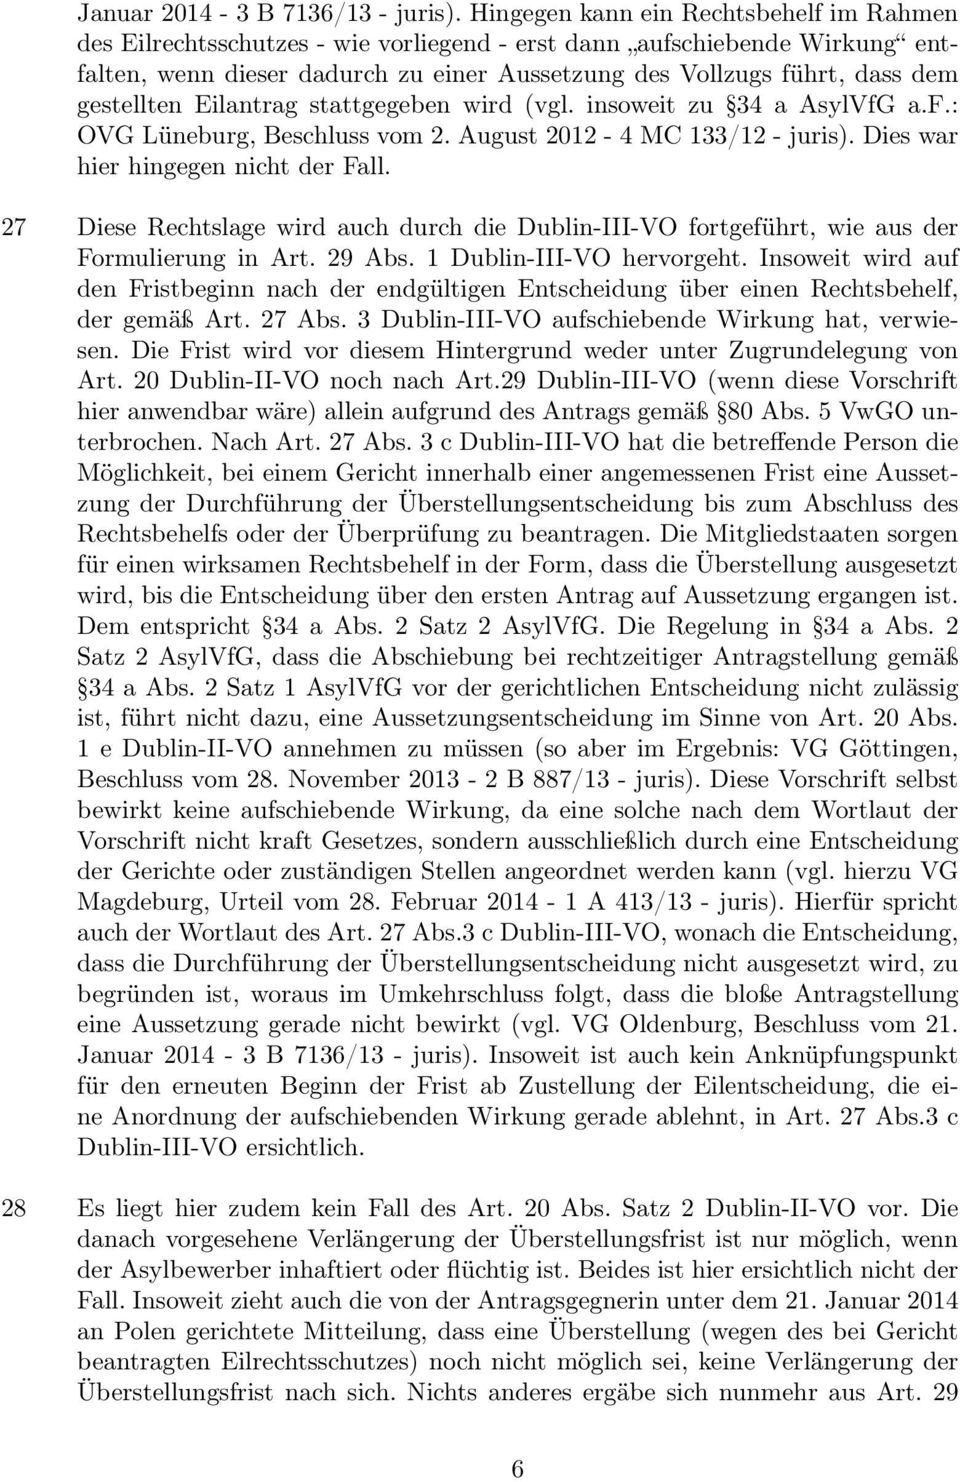 gestellten Eilantrag stattgegeben wird (vgl. insoweit zu 34 a AsylVfG a.f.: OVG Lüneburg, Beschluss vom 2. August 2012-4 MC 133/12 - juris). Dies war hier hingegen nicht der Fall.